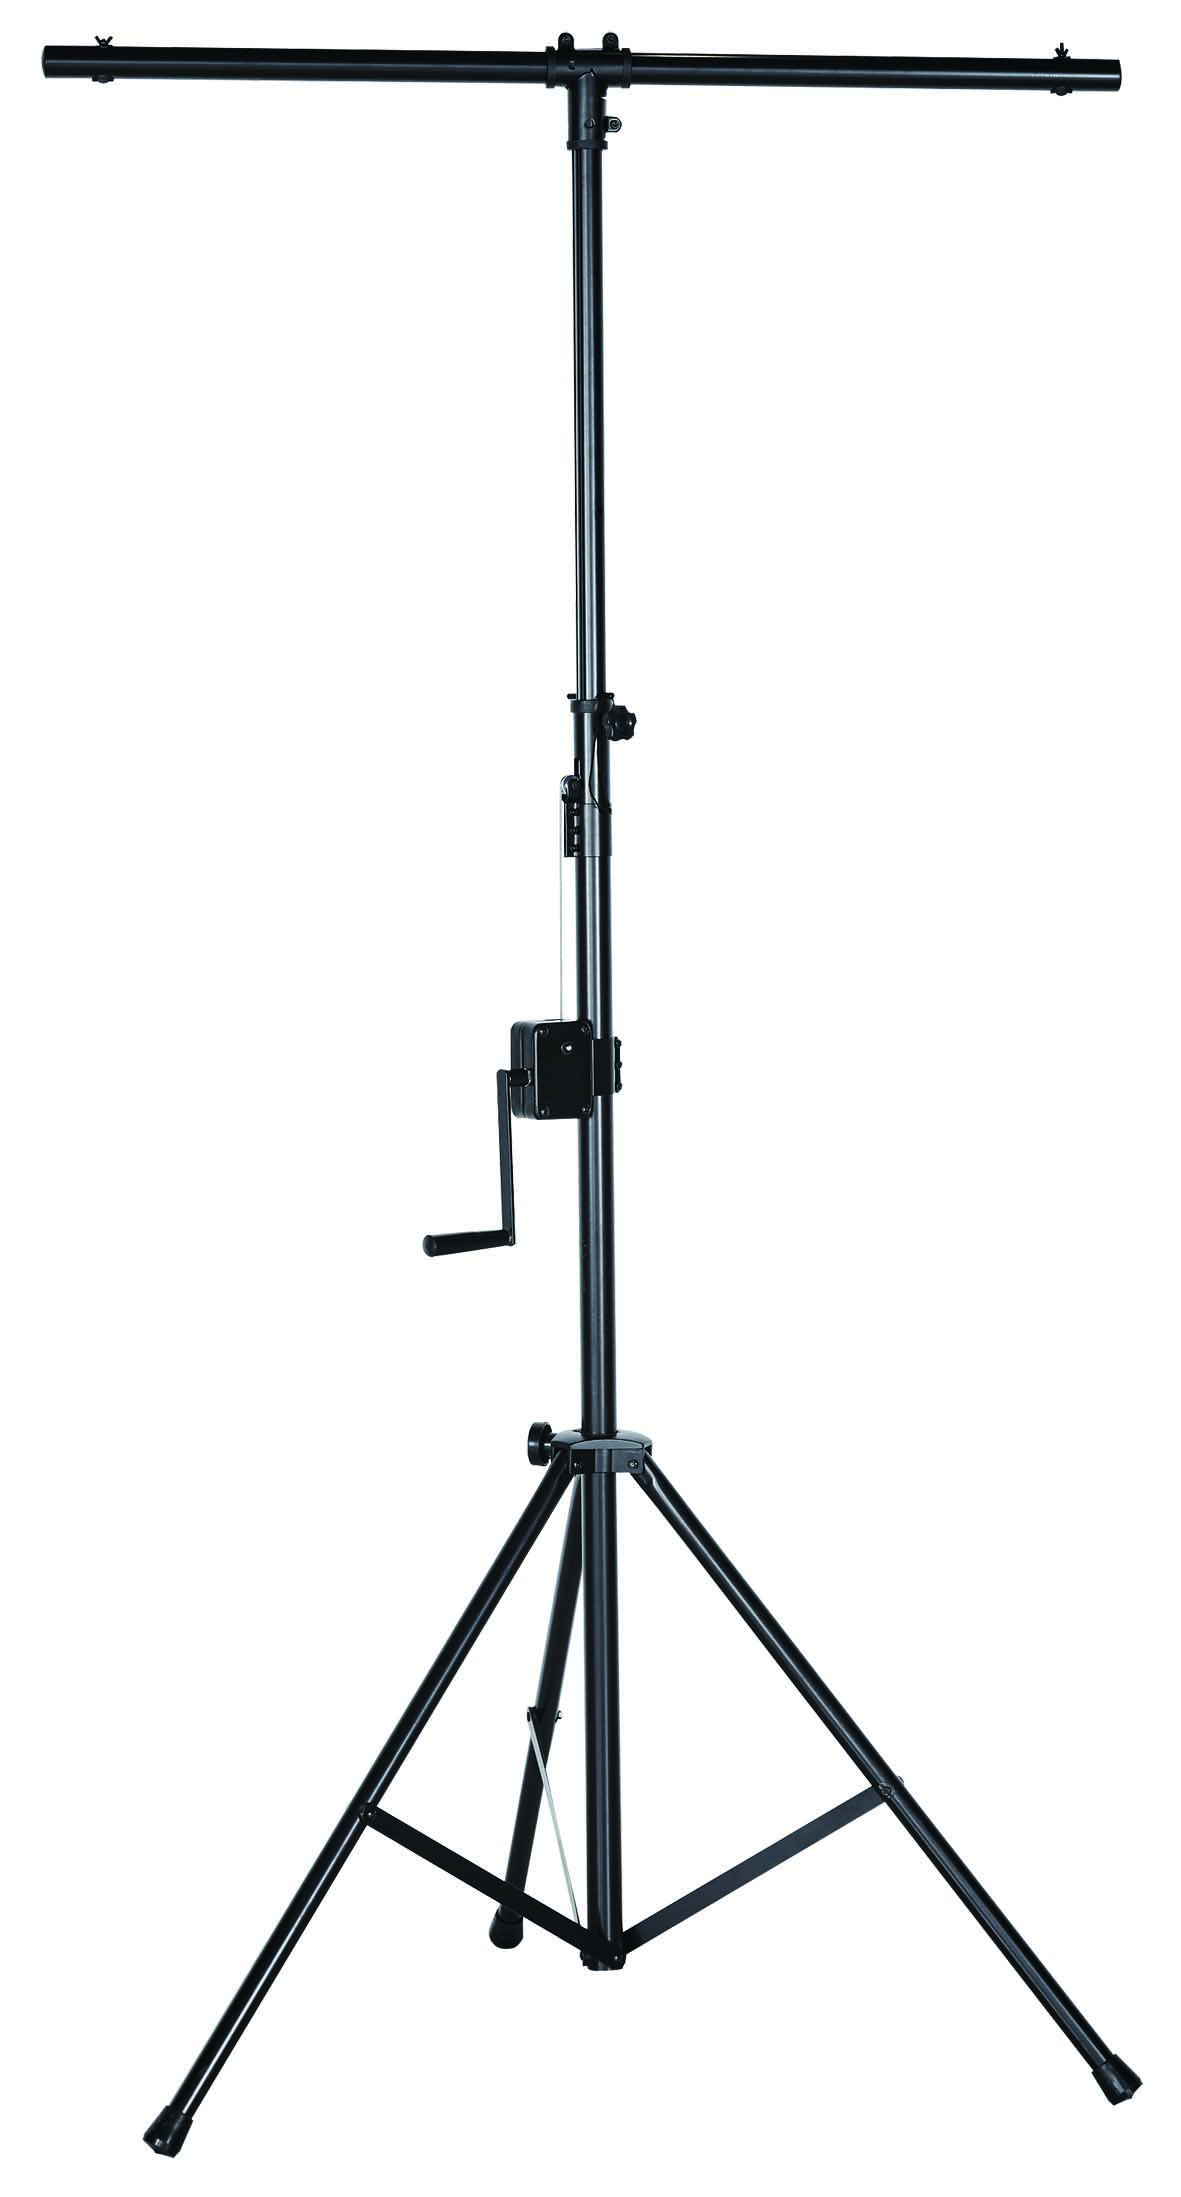 Стойки для светового оборудования Xline LS-30TUV комплект оборудования falcon eyes bloggerkit 06 mic для видеосъёмки